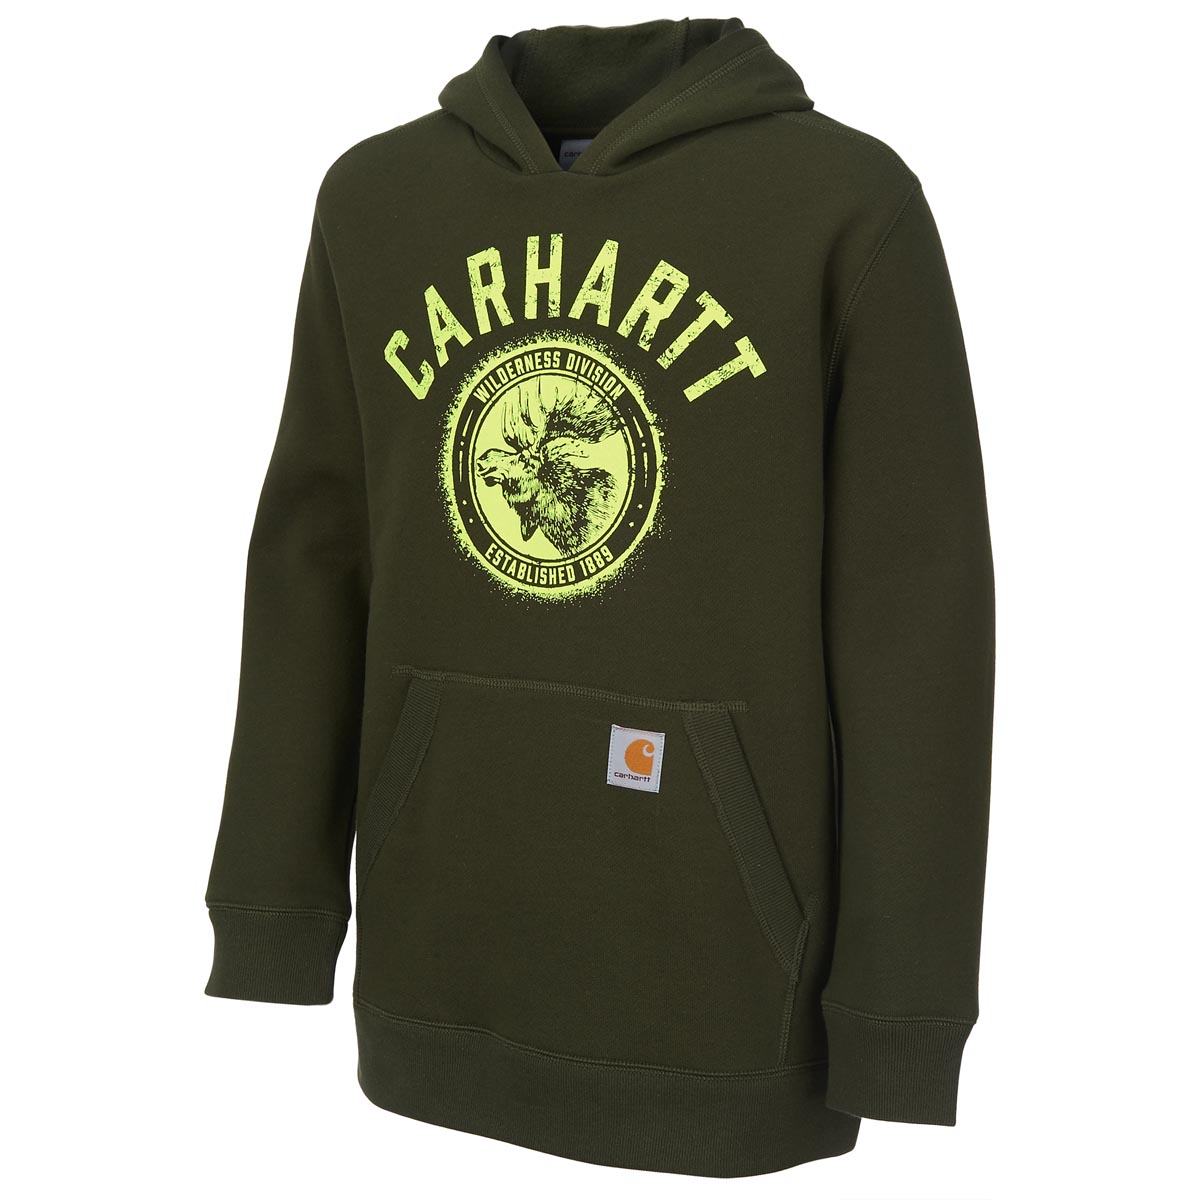 Carhartt Boys' Wilderness Division Sweatshirt